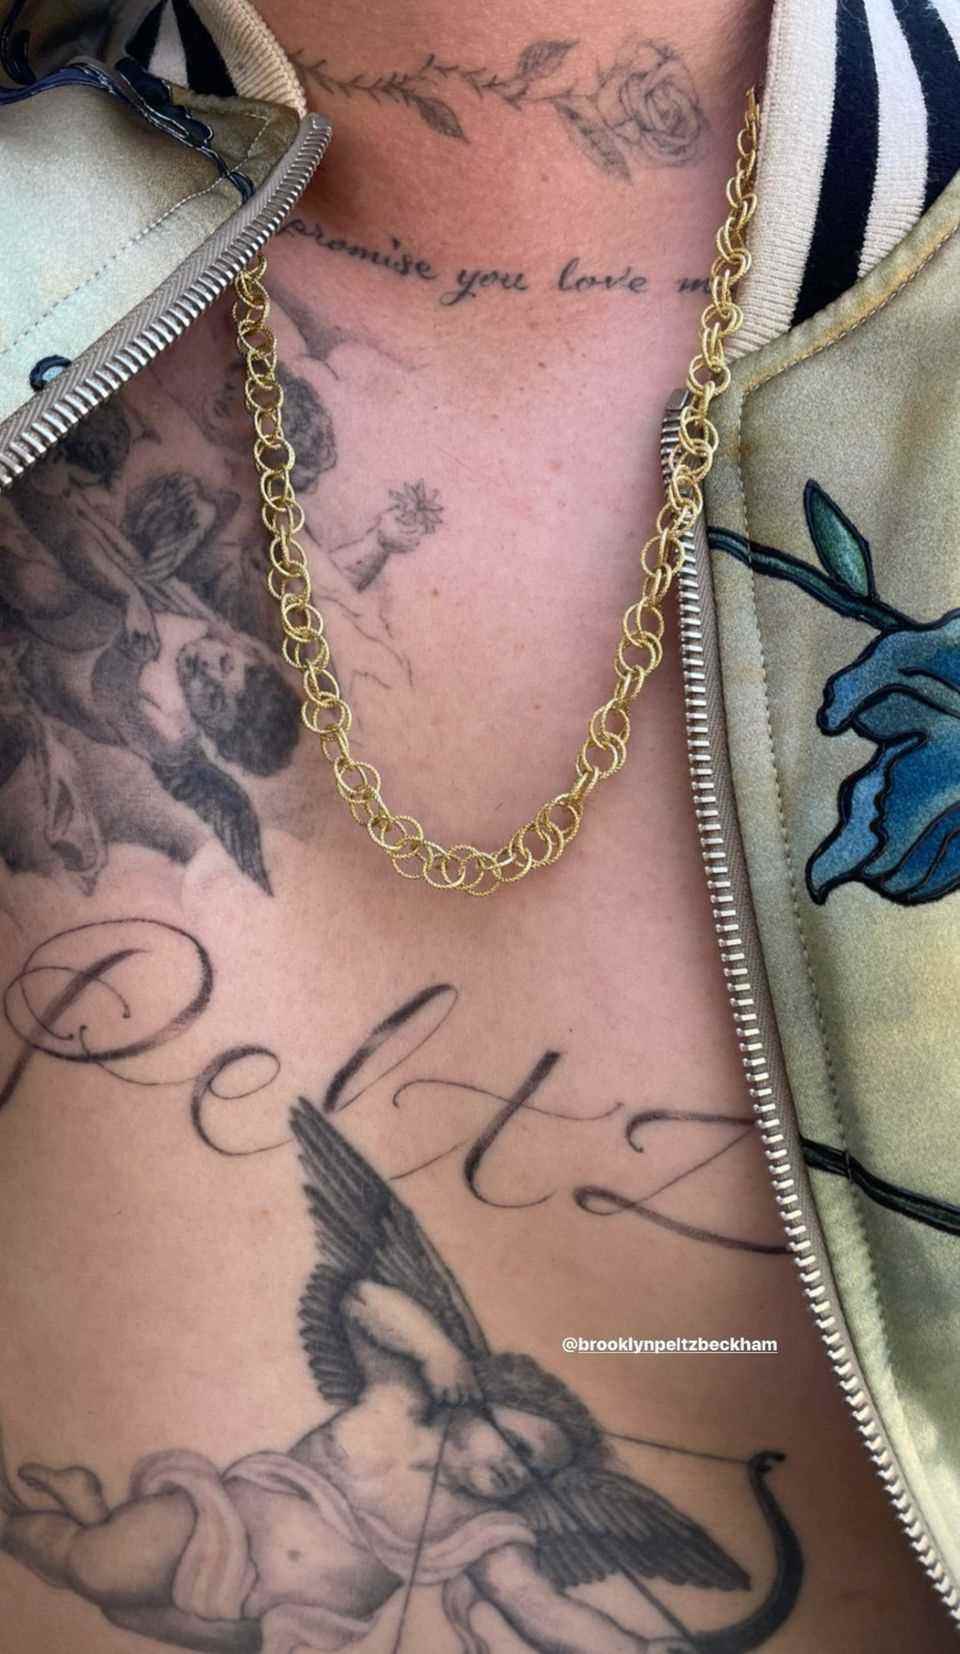 Brooklyn Beckham's tattoo with writing "Peltz"